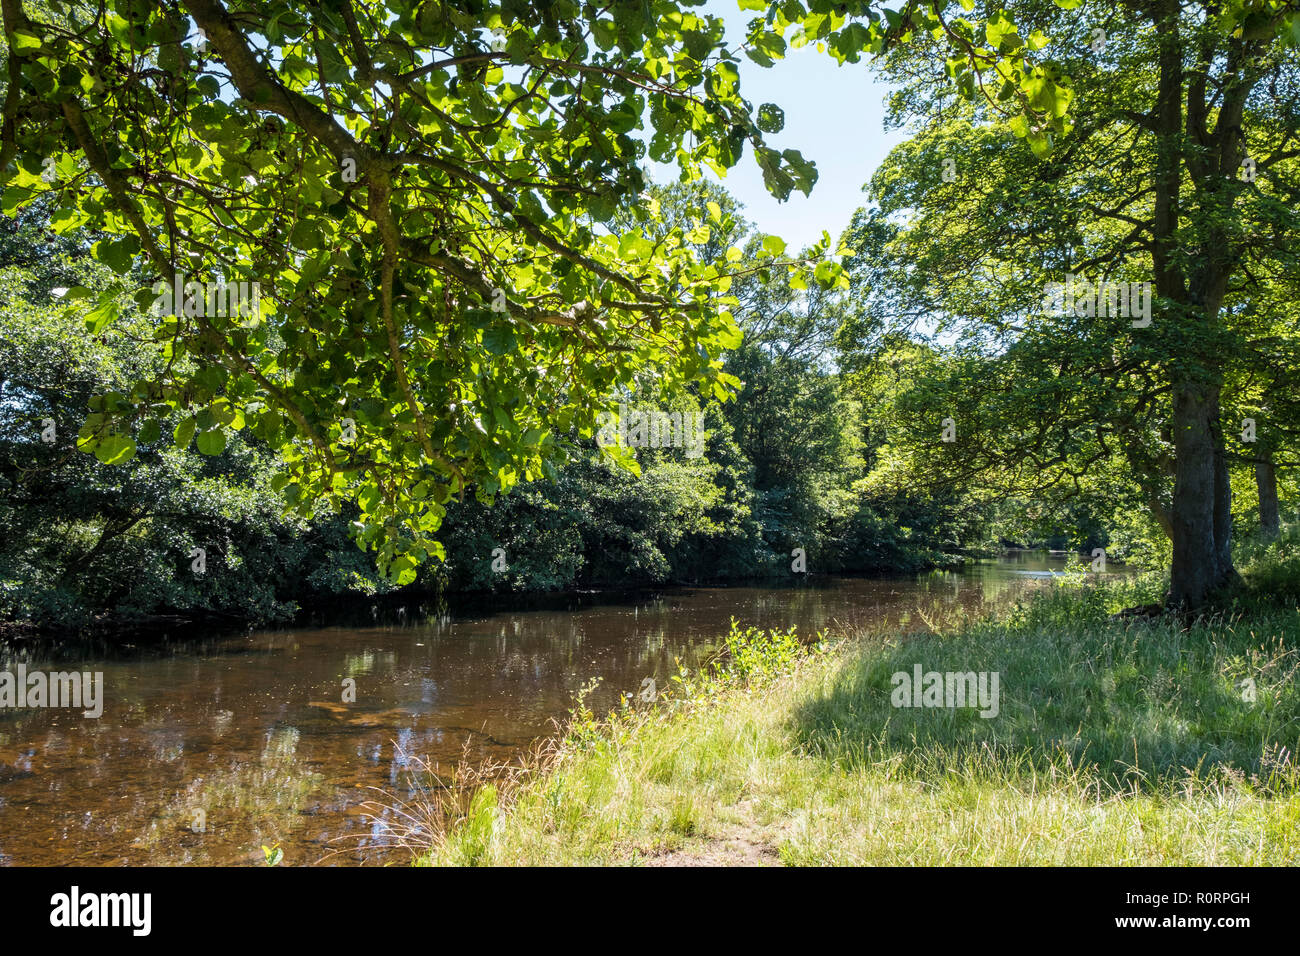 Englische Landschaft Fluss Szene. Den Fluss Derwent, die zwischen Bäume im Sommer, in der Nähe der Offerton, Derbyshire, Peak District, England, Großbritannien Stockfoto